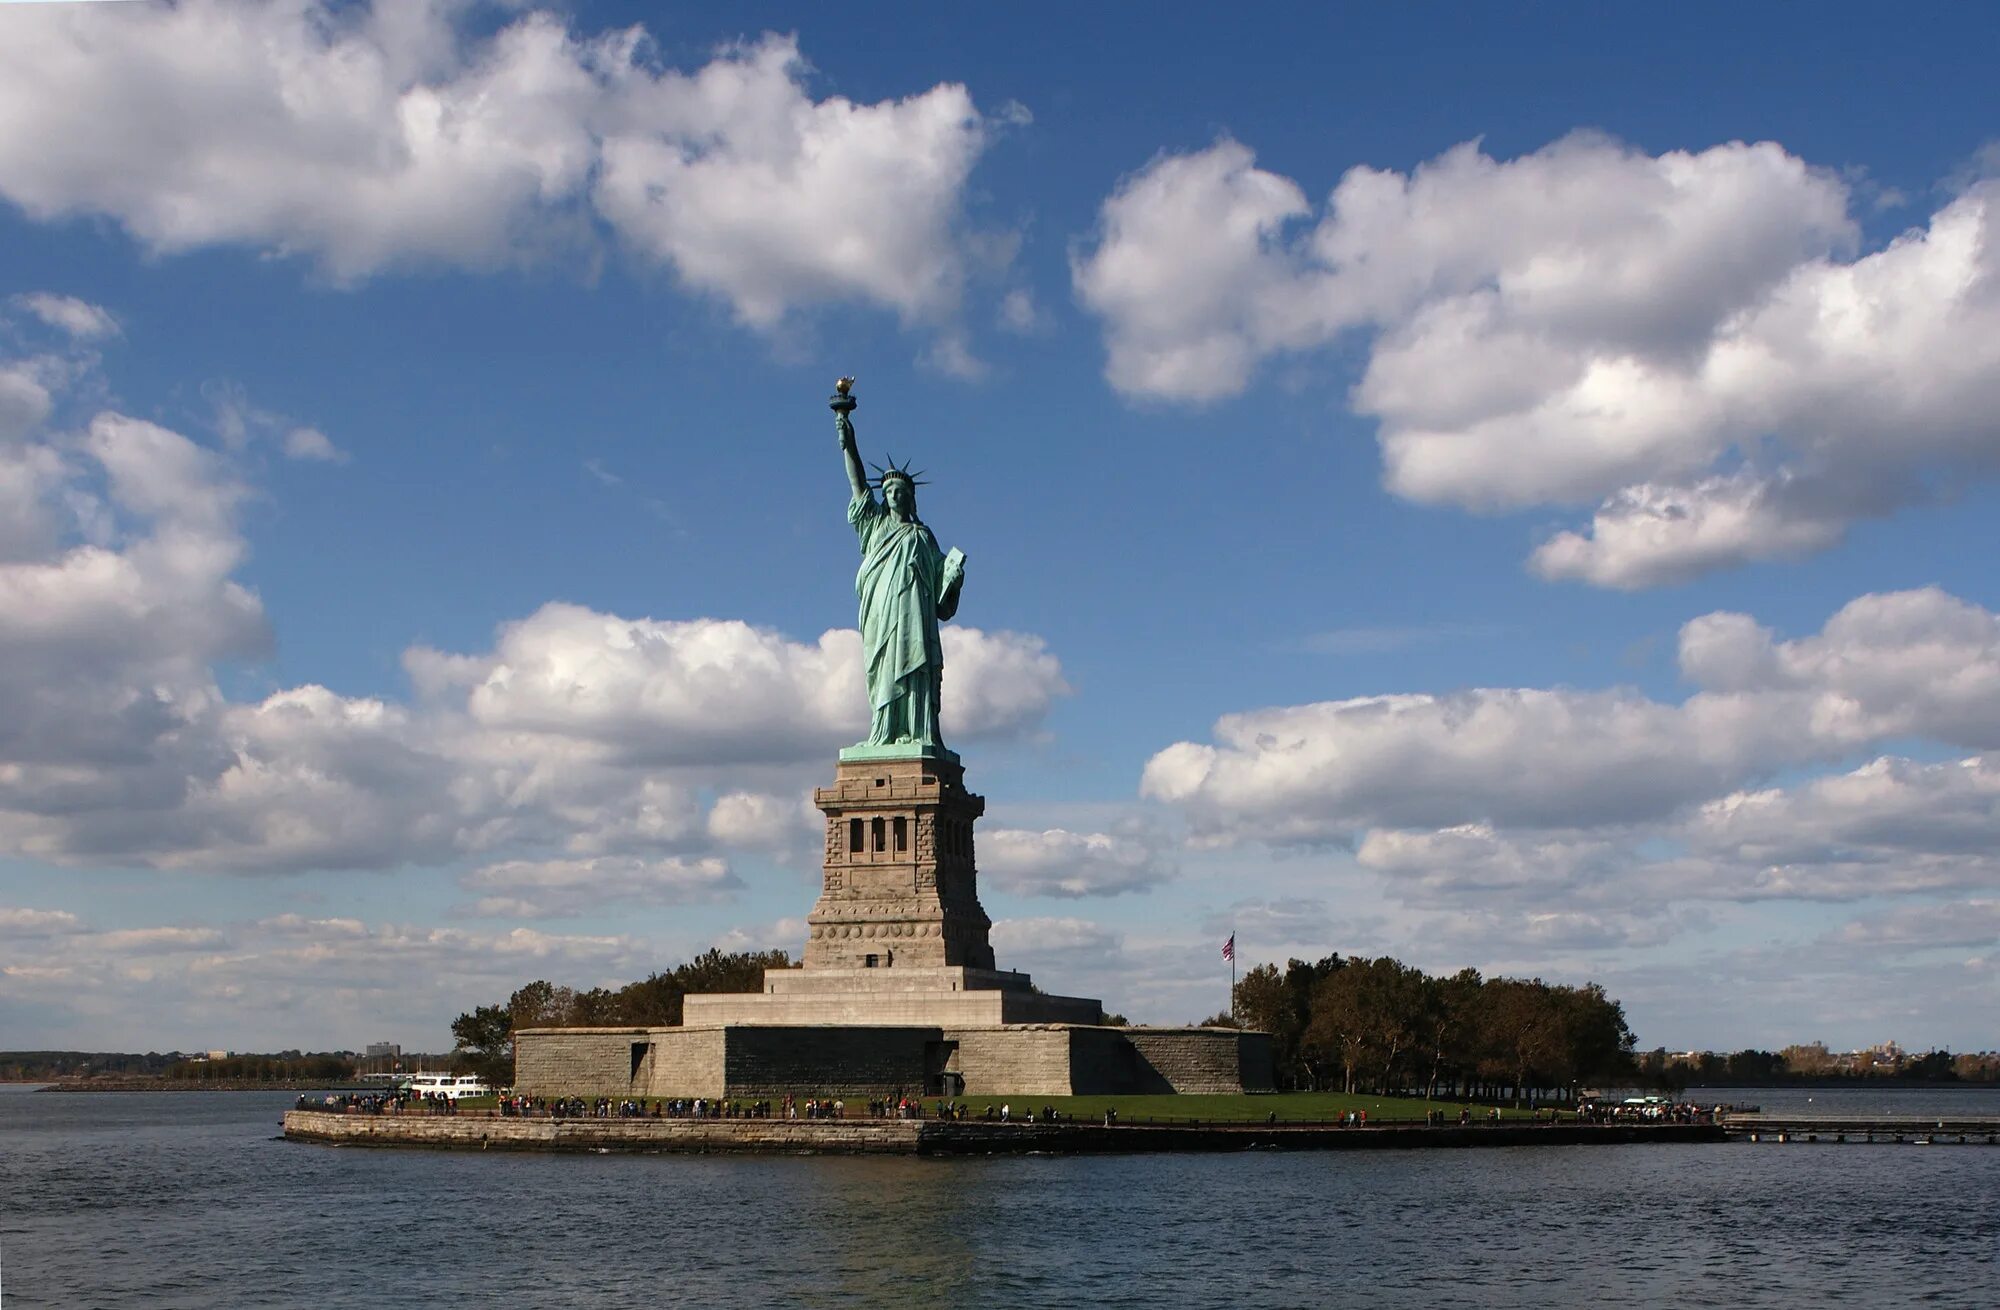 Памятники которые важно сохранить для поколения. США Нью-Йорк статуя свободы. Достопримечательности США статуя свободы. Достопримечательности Нью Йорка статуя свободы. 4. Статуя свободы, Нью-Йорк, США.